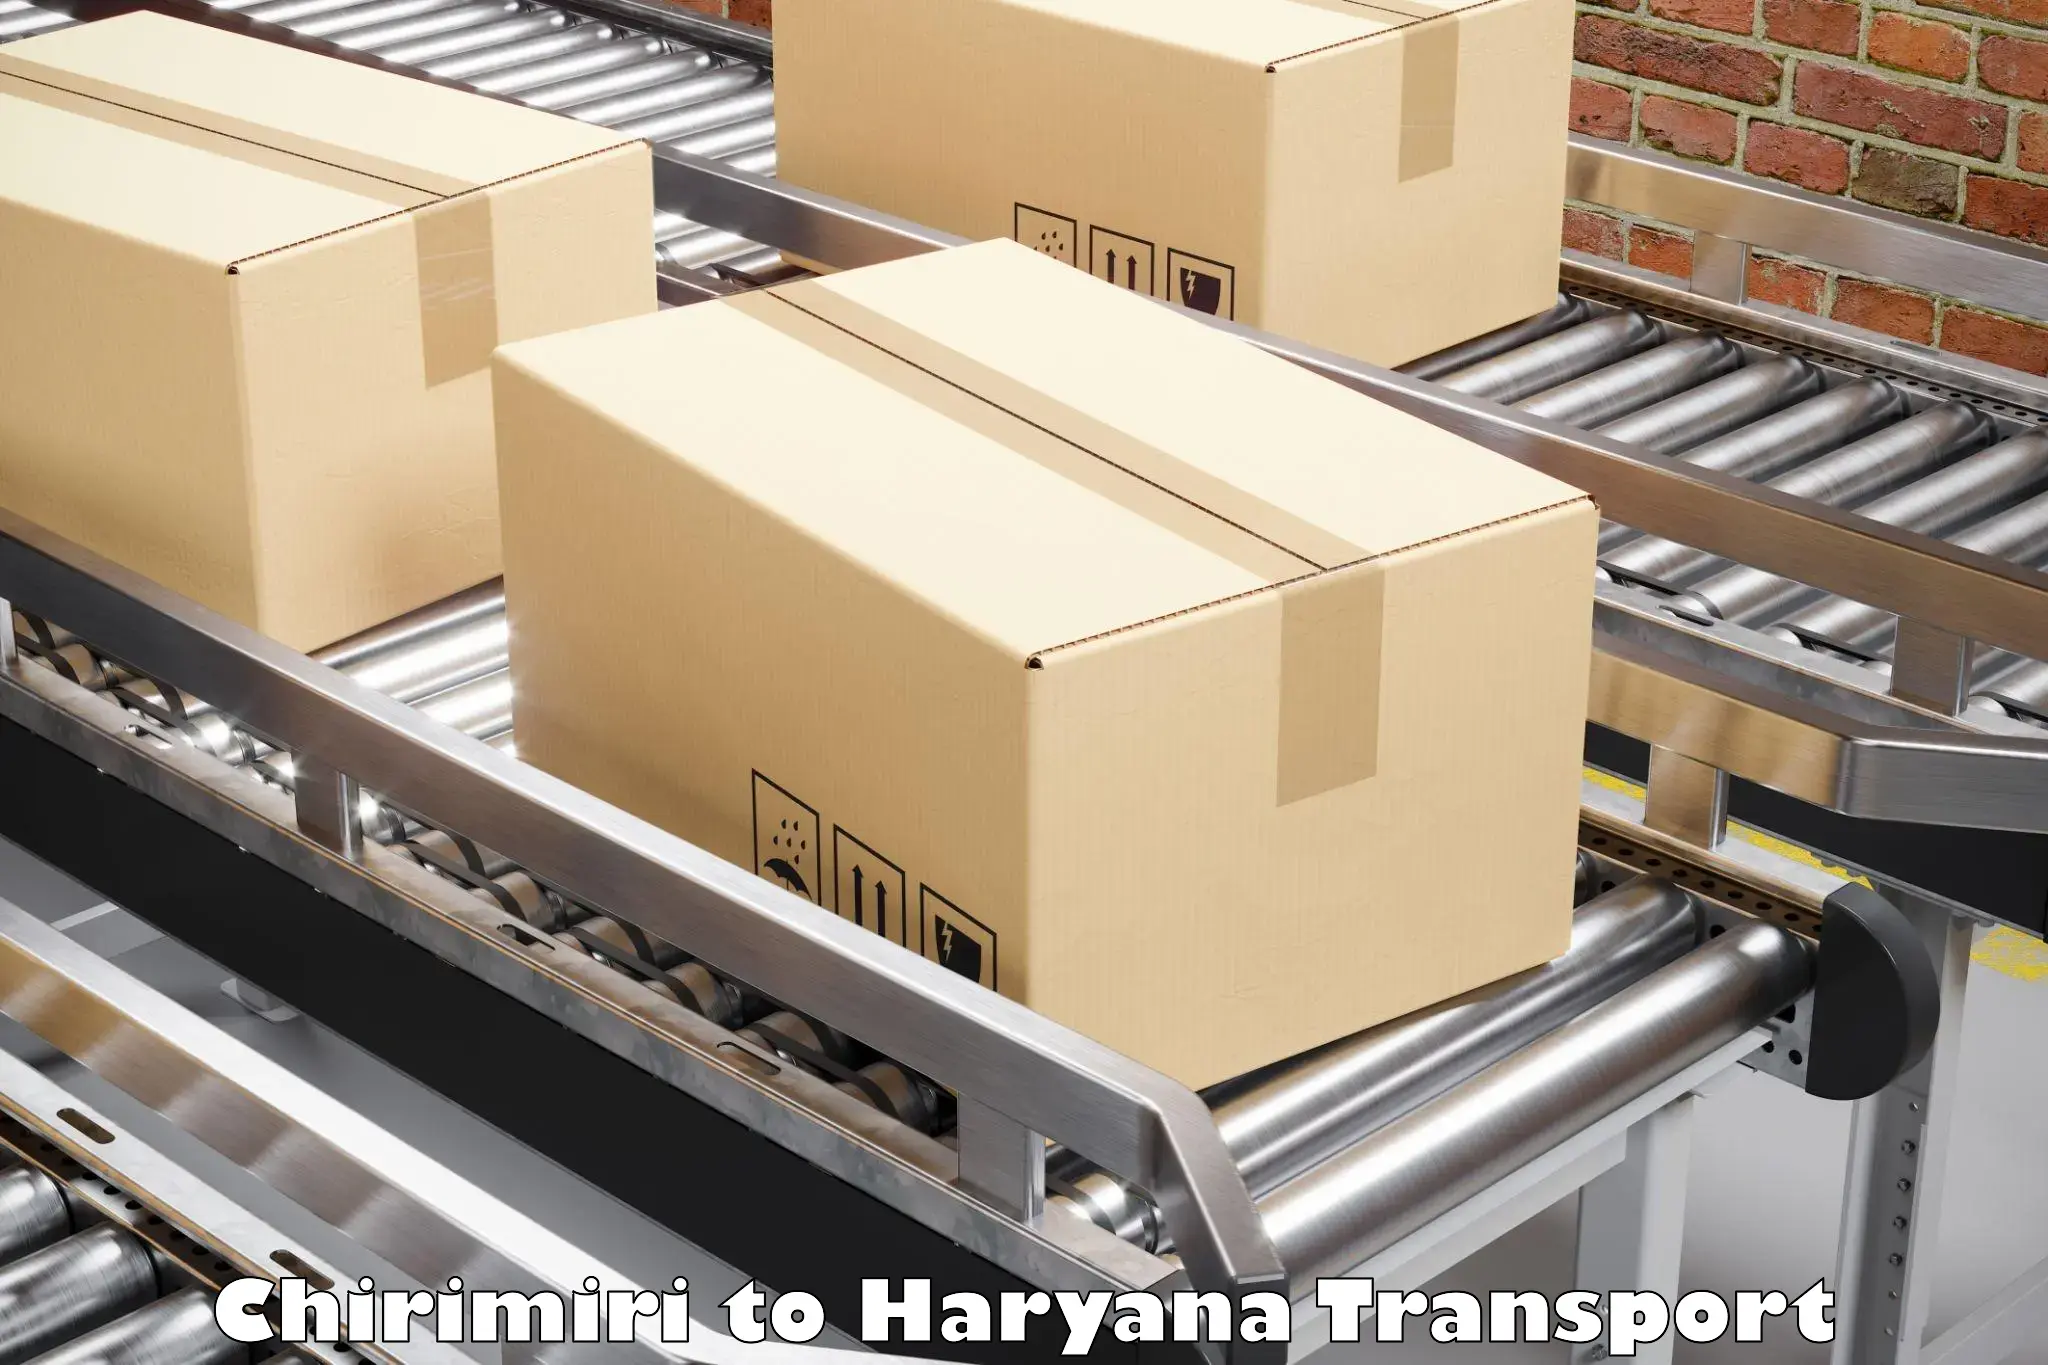 Container transport service in Chirimiri to Narwana